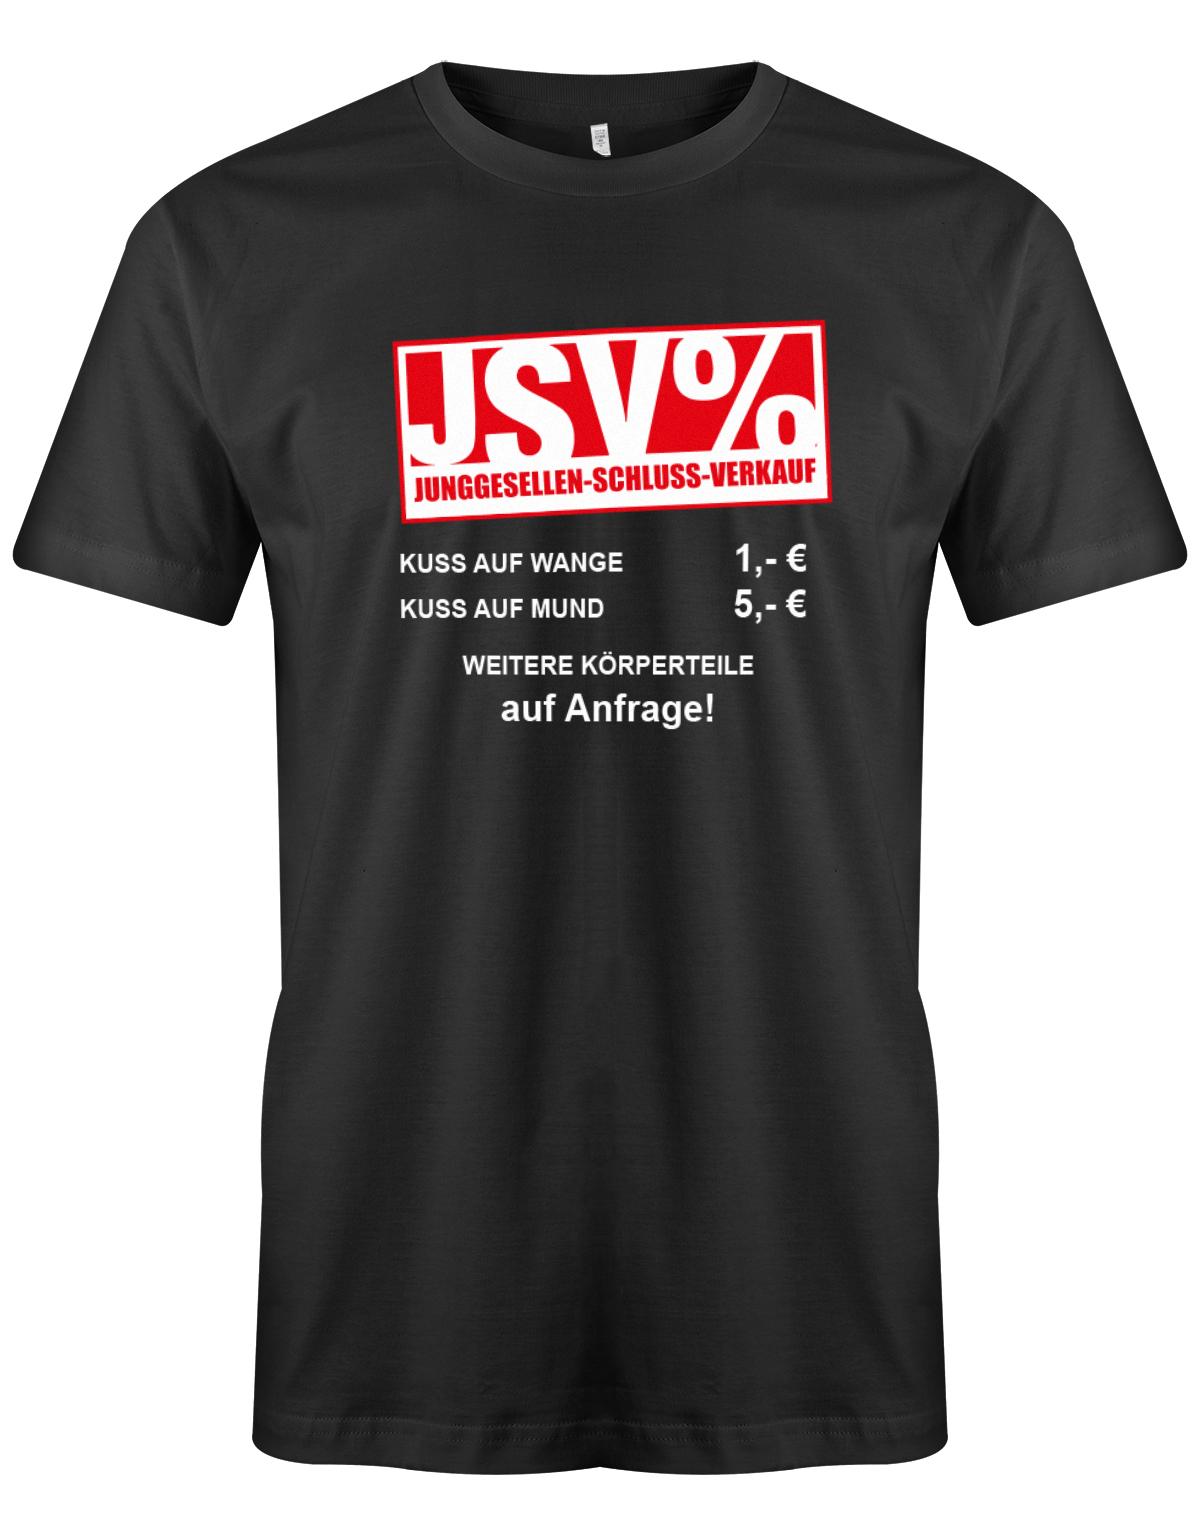 JSV-Kuss-auf-Wange-1-Euro-auf-Mund-5-Euro-Herren-JGA-Shirt-Schwarz